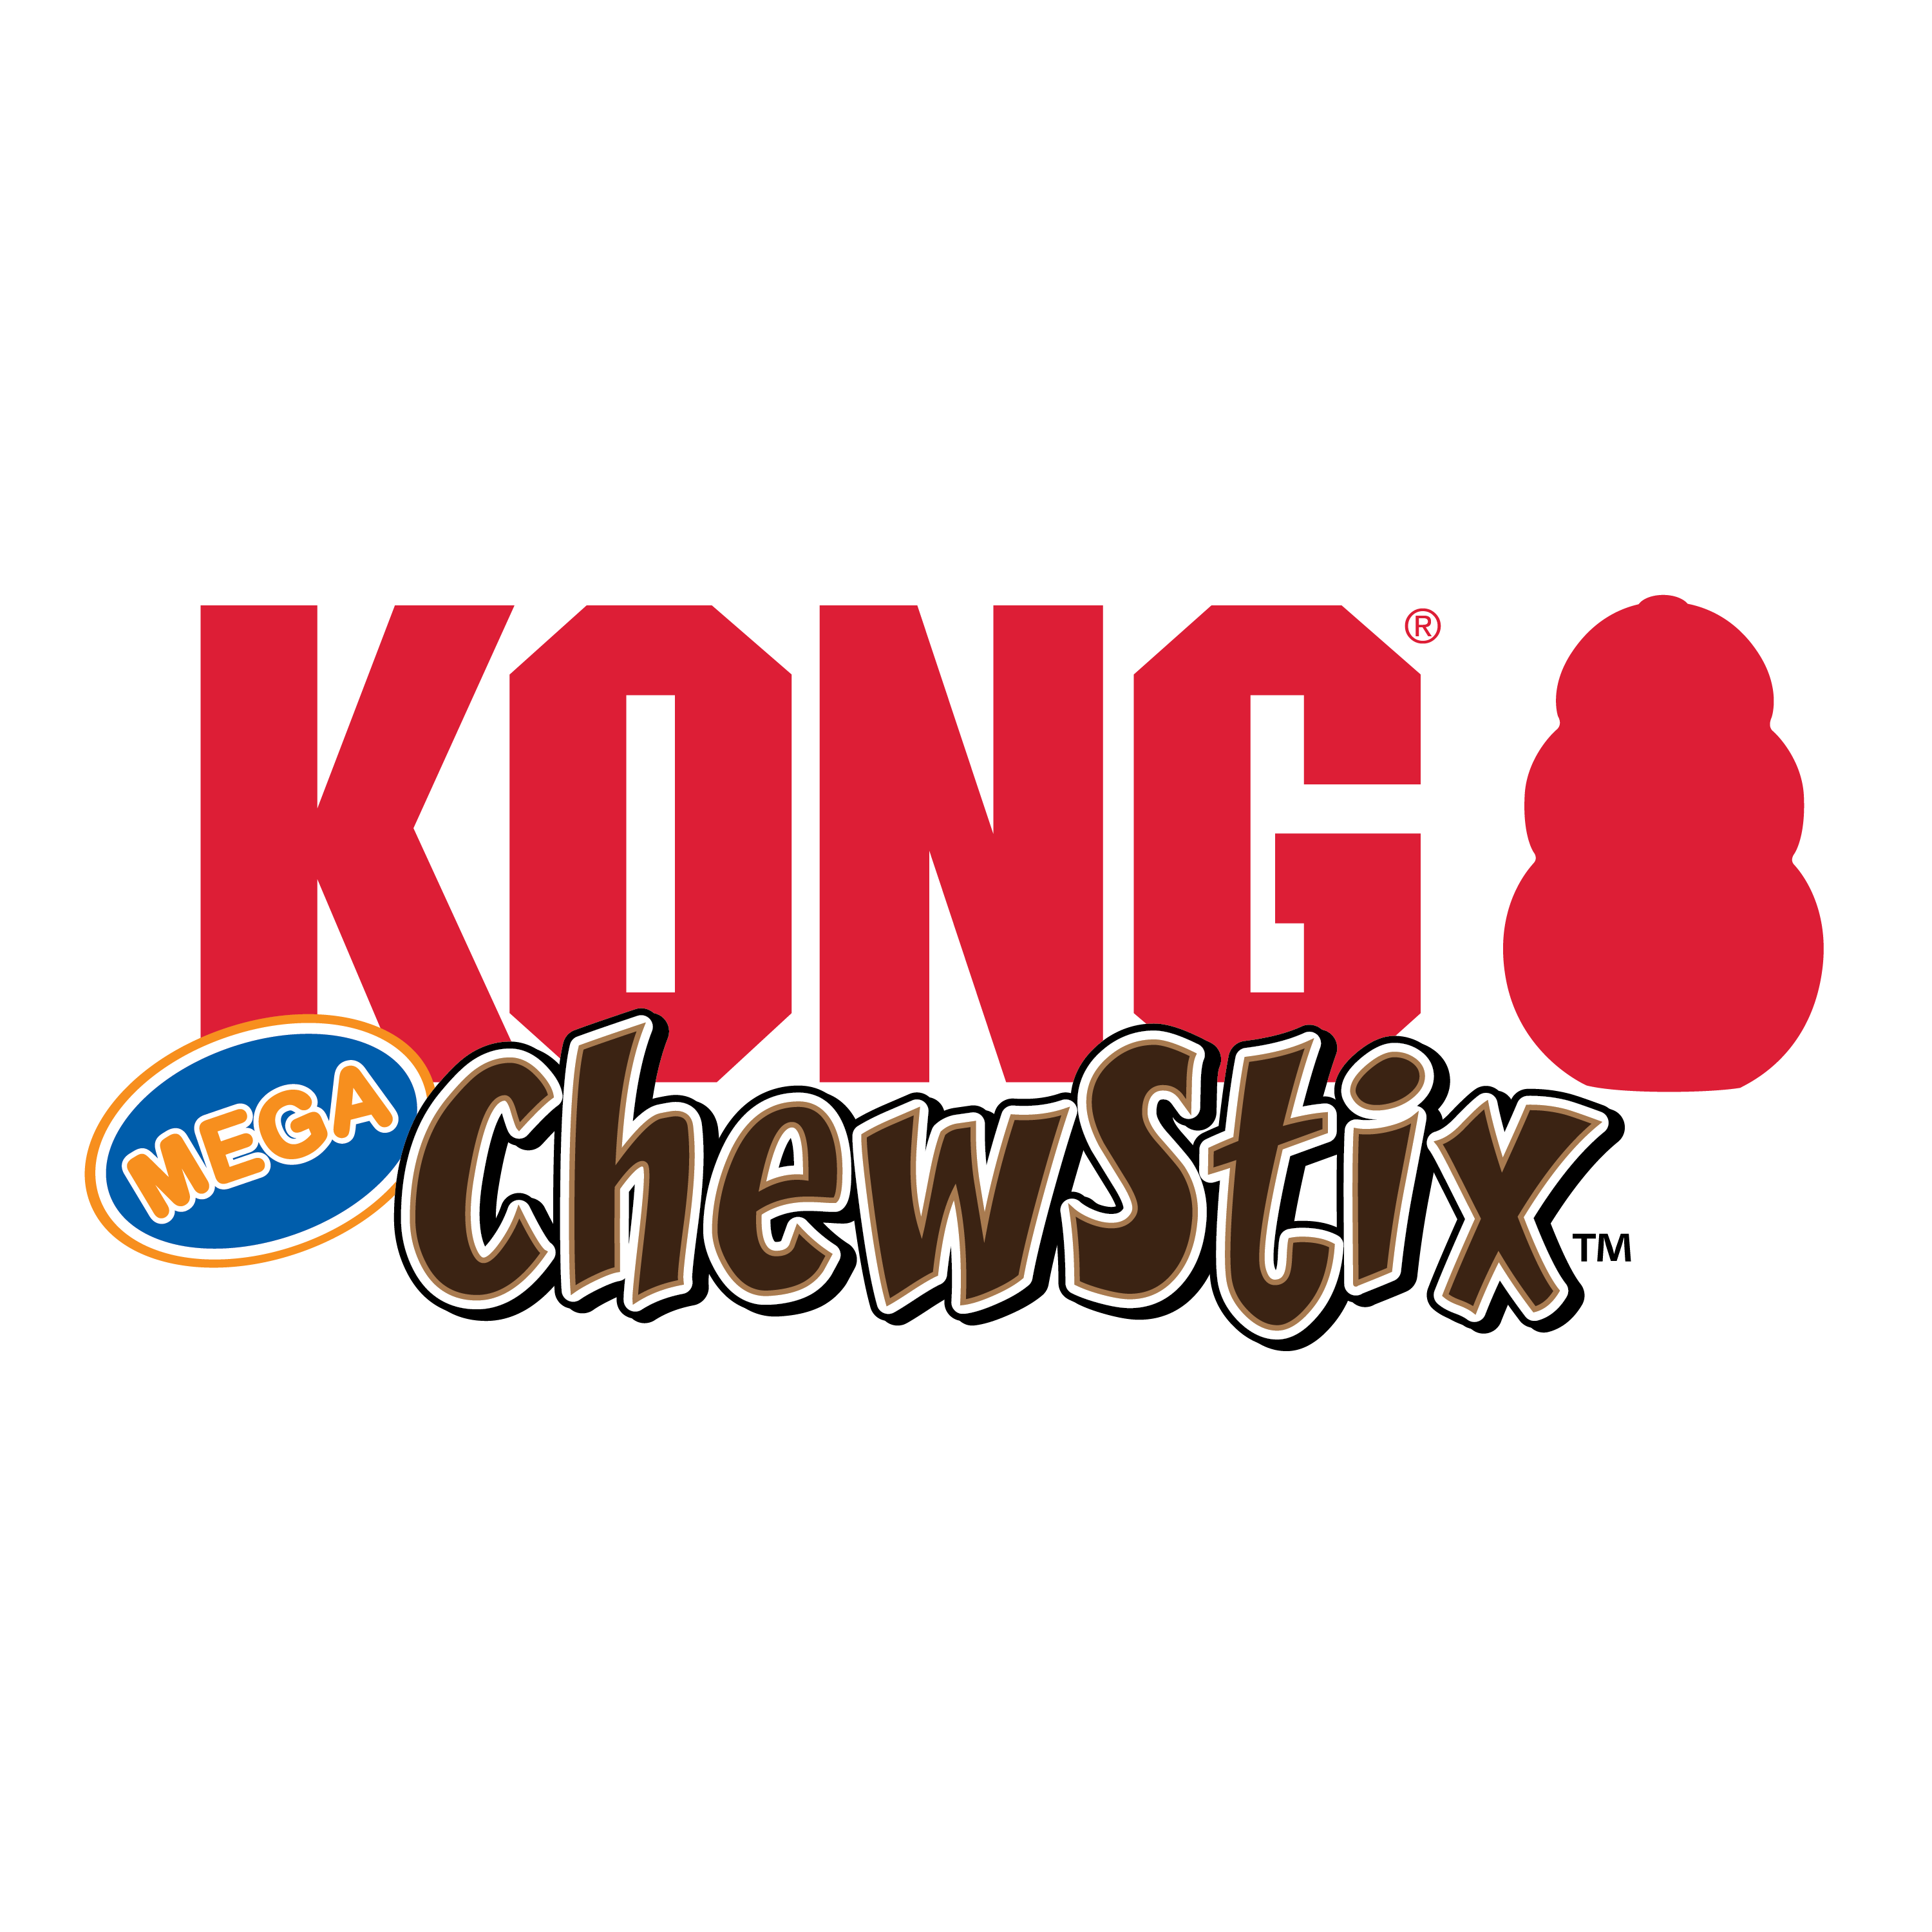 ChewStix Tough Mega Stick alt1 imagem do produto